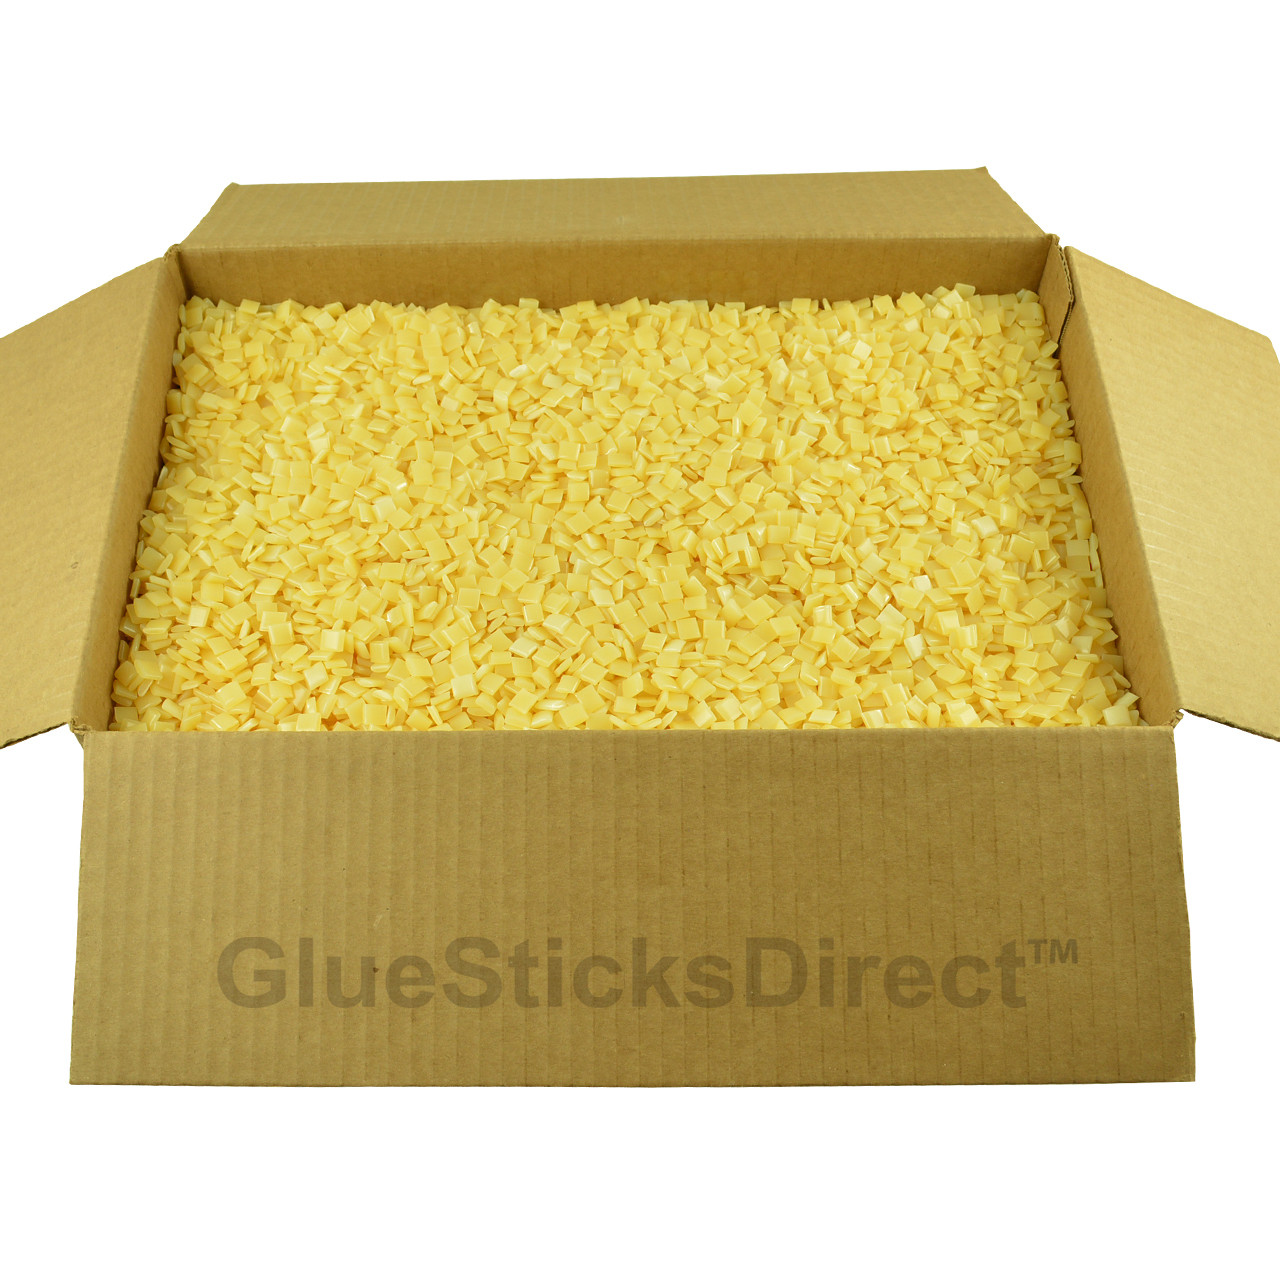 GlueSticksDirect  Hot Melt HM060 Freezer Grade - 25 lbs